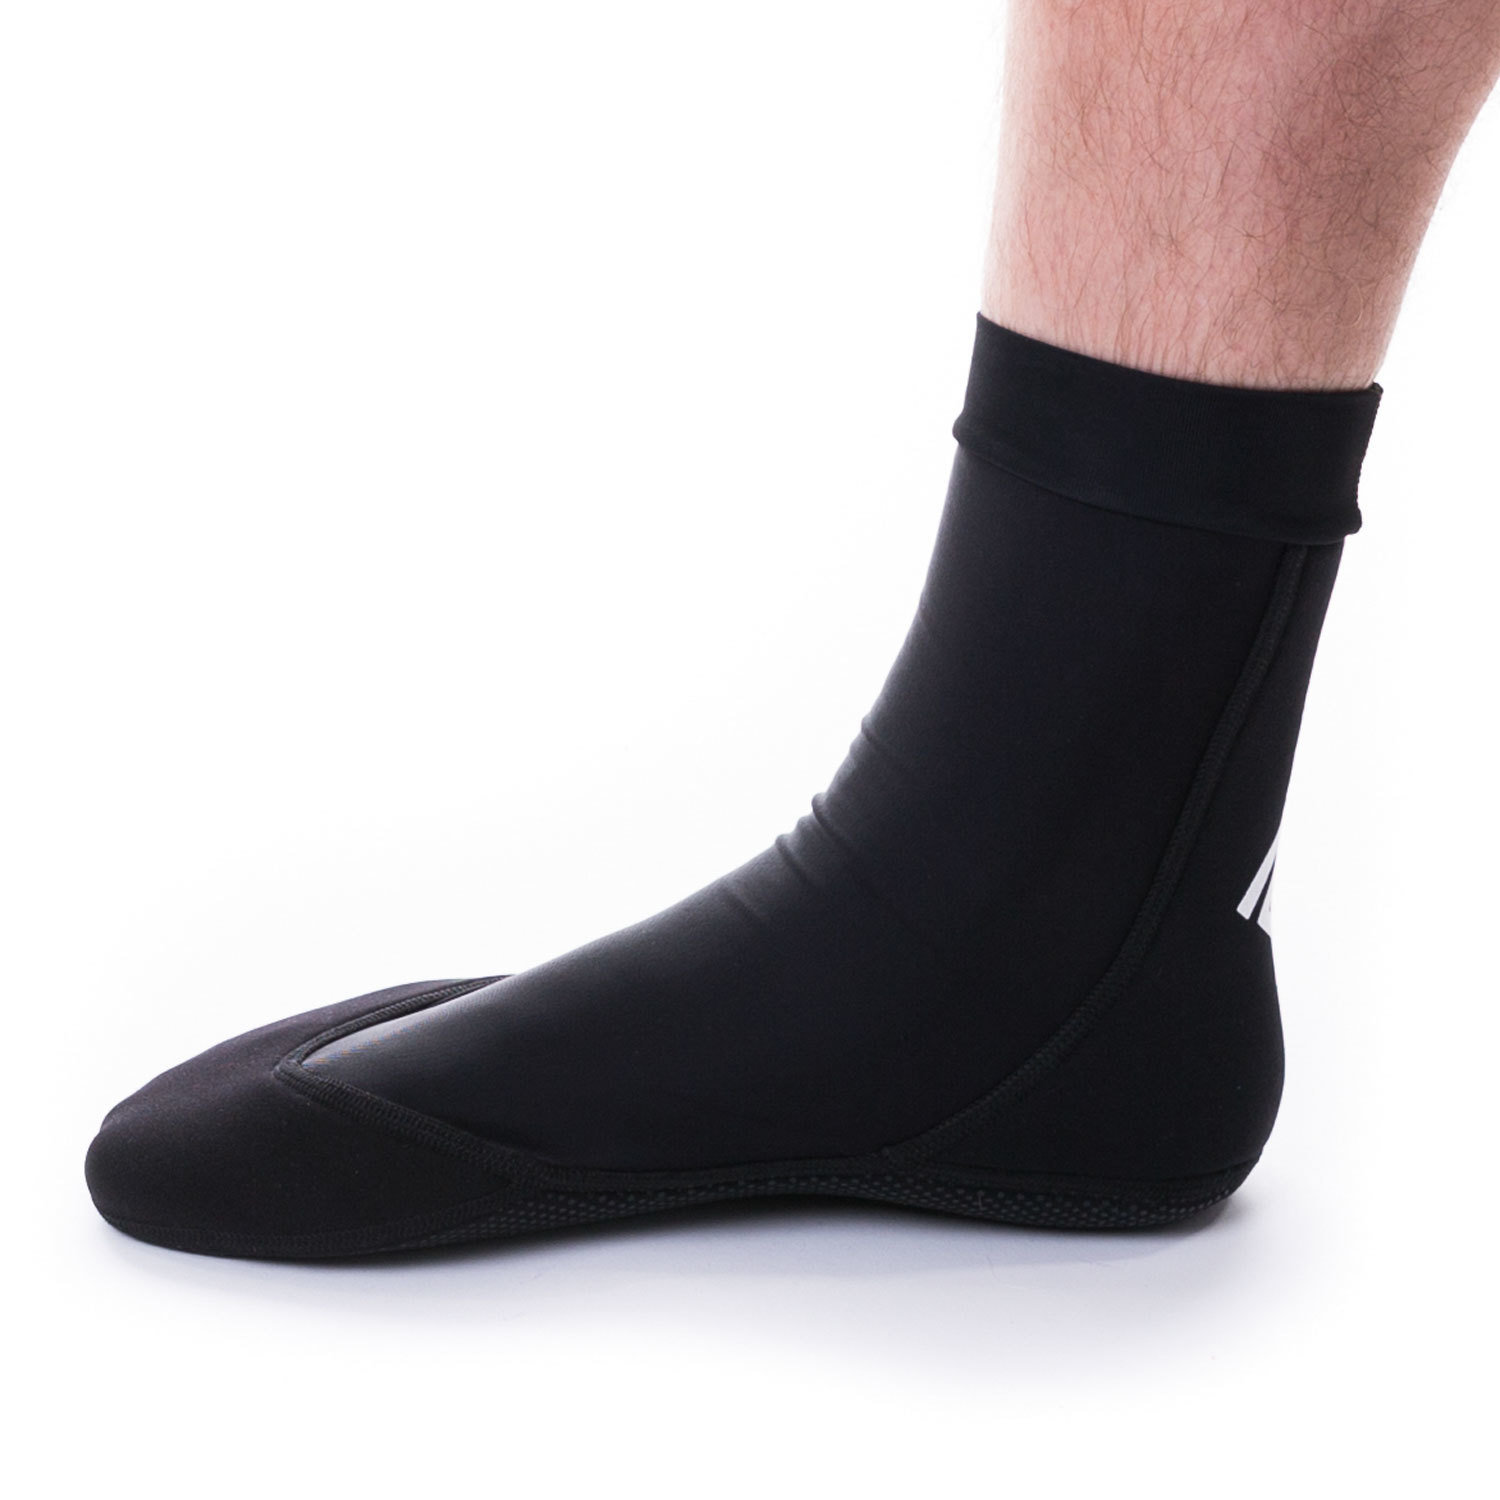 Super Pro Combat Gear Ankle Socks Black/White - KYOKUSHINWORLDSHOP